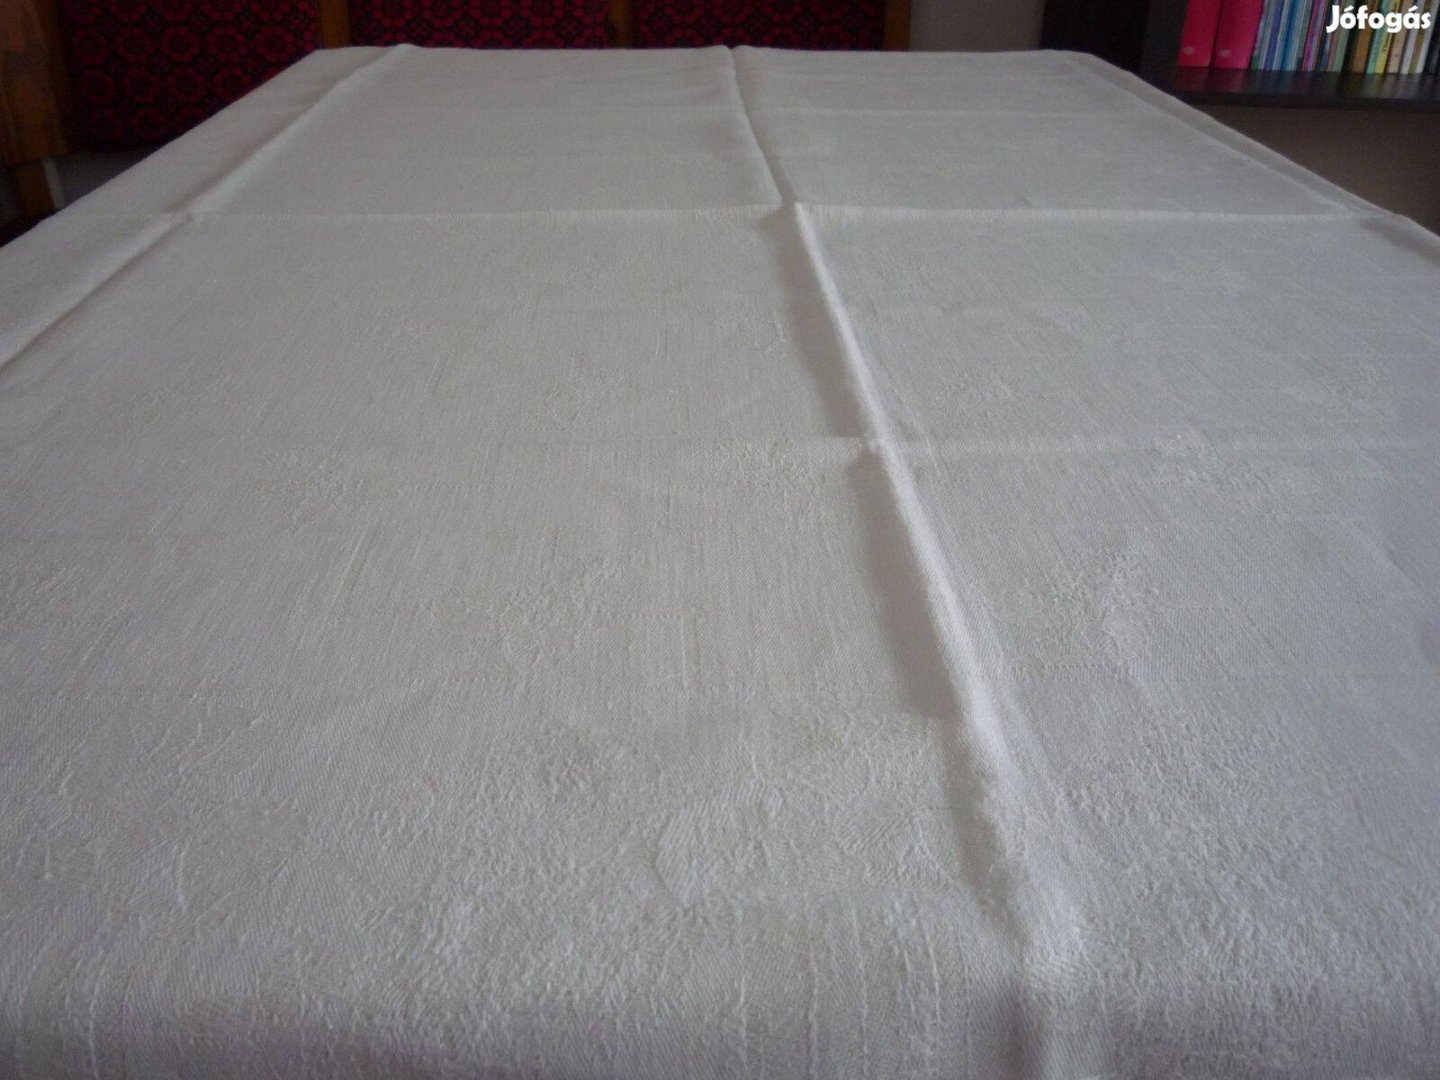 Vastag, fehér damaszt asztalterítő önmagában mintás130X140